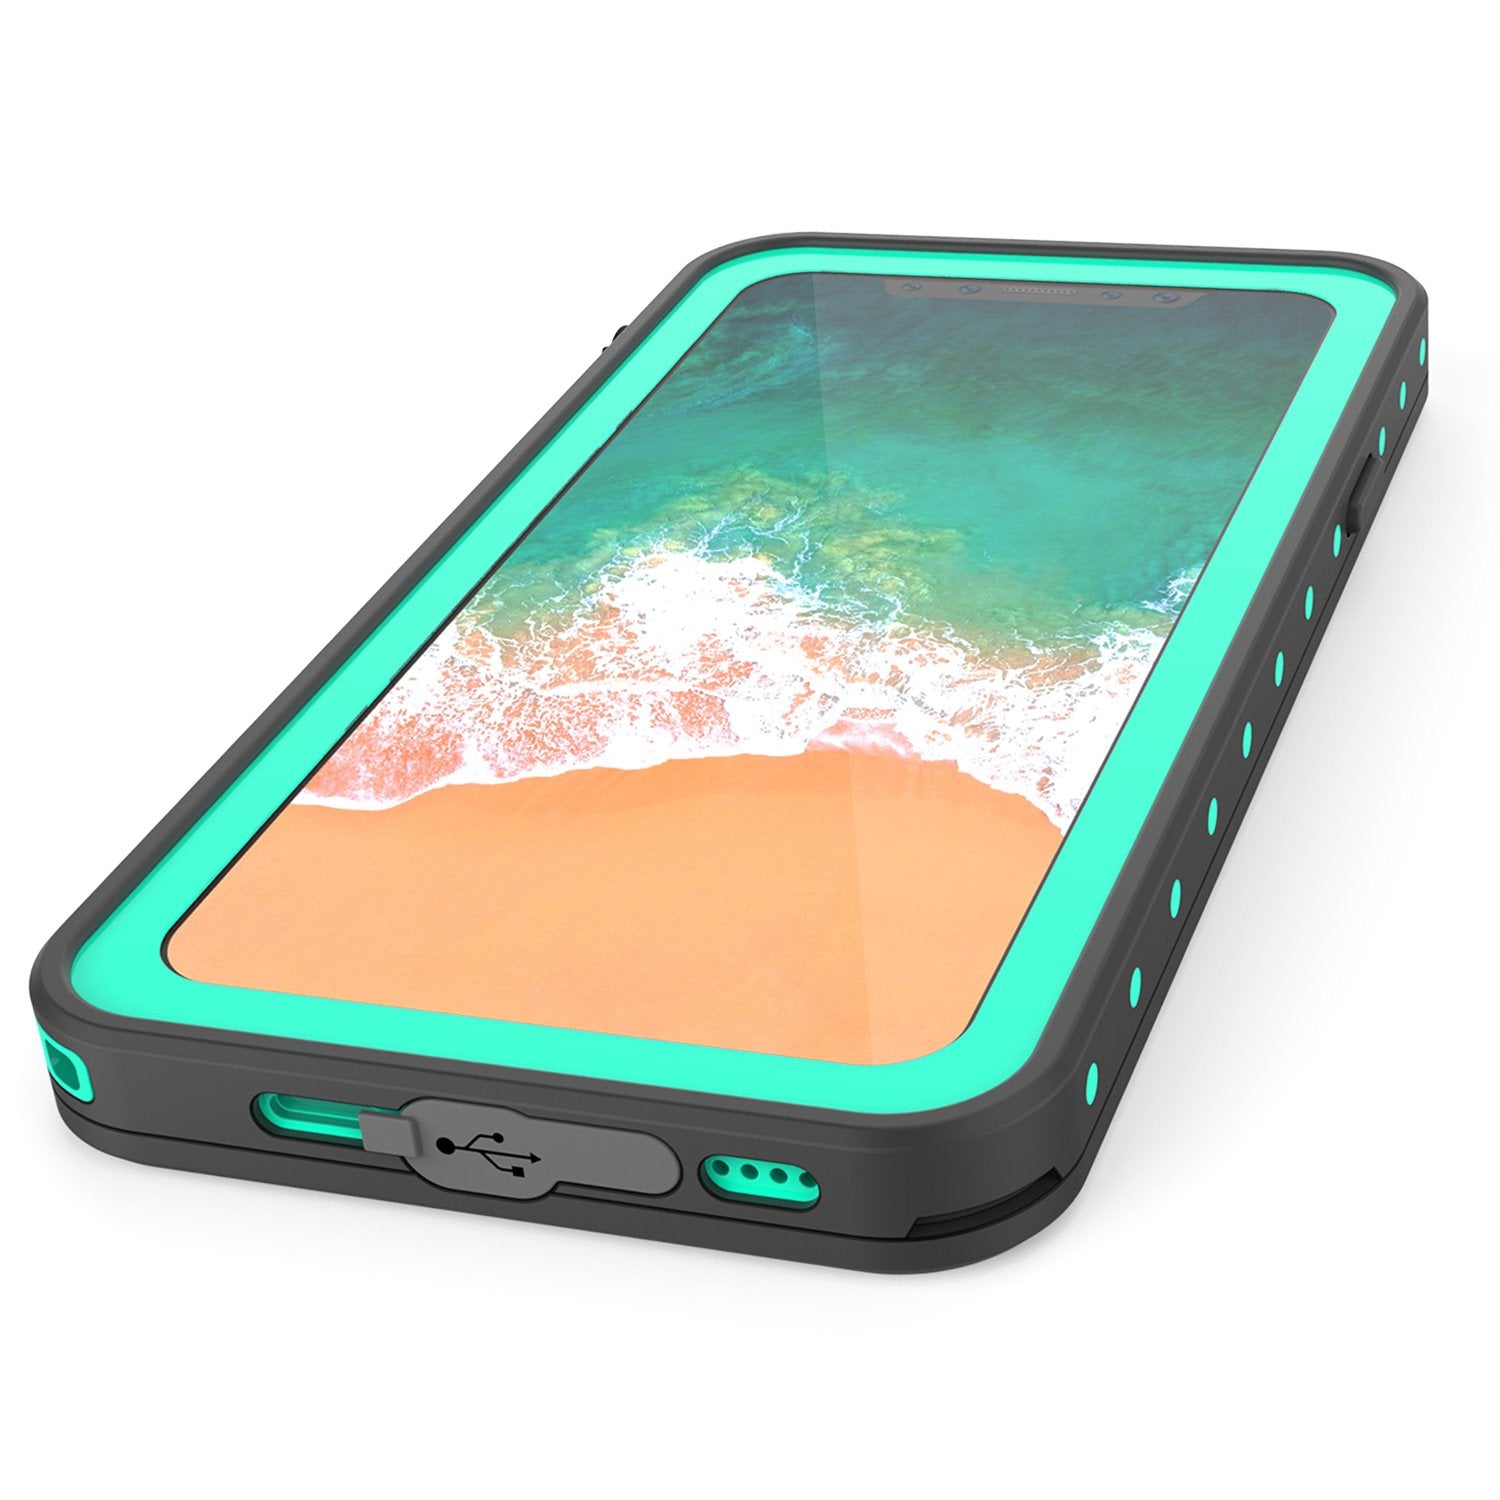 iPhone X Waterproof IP68 Case, Punkcase [Teal] [StudStar Series] [Slim Fit] [Dirtproof] - PunkCase NZ